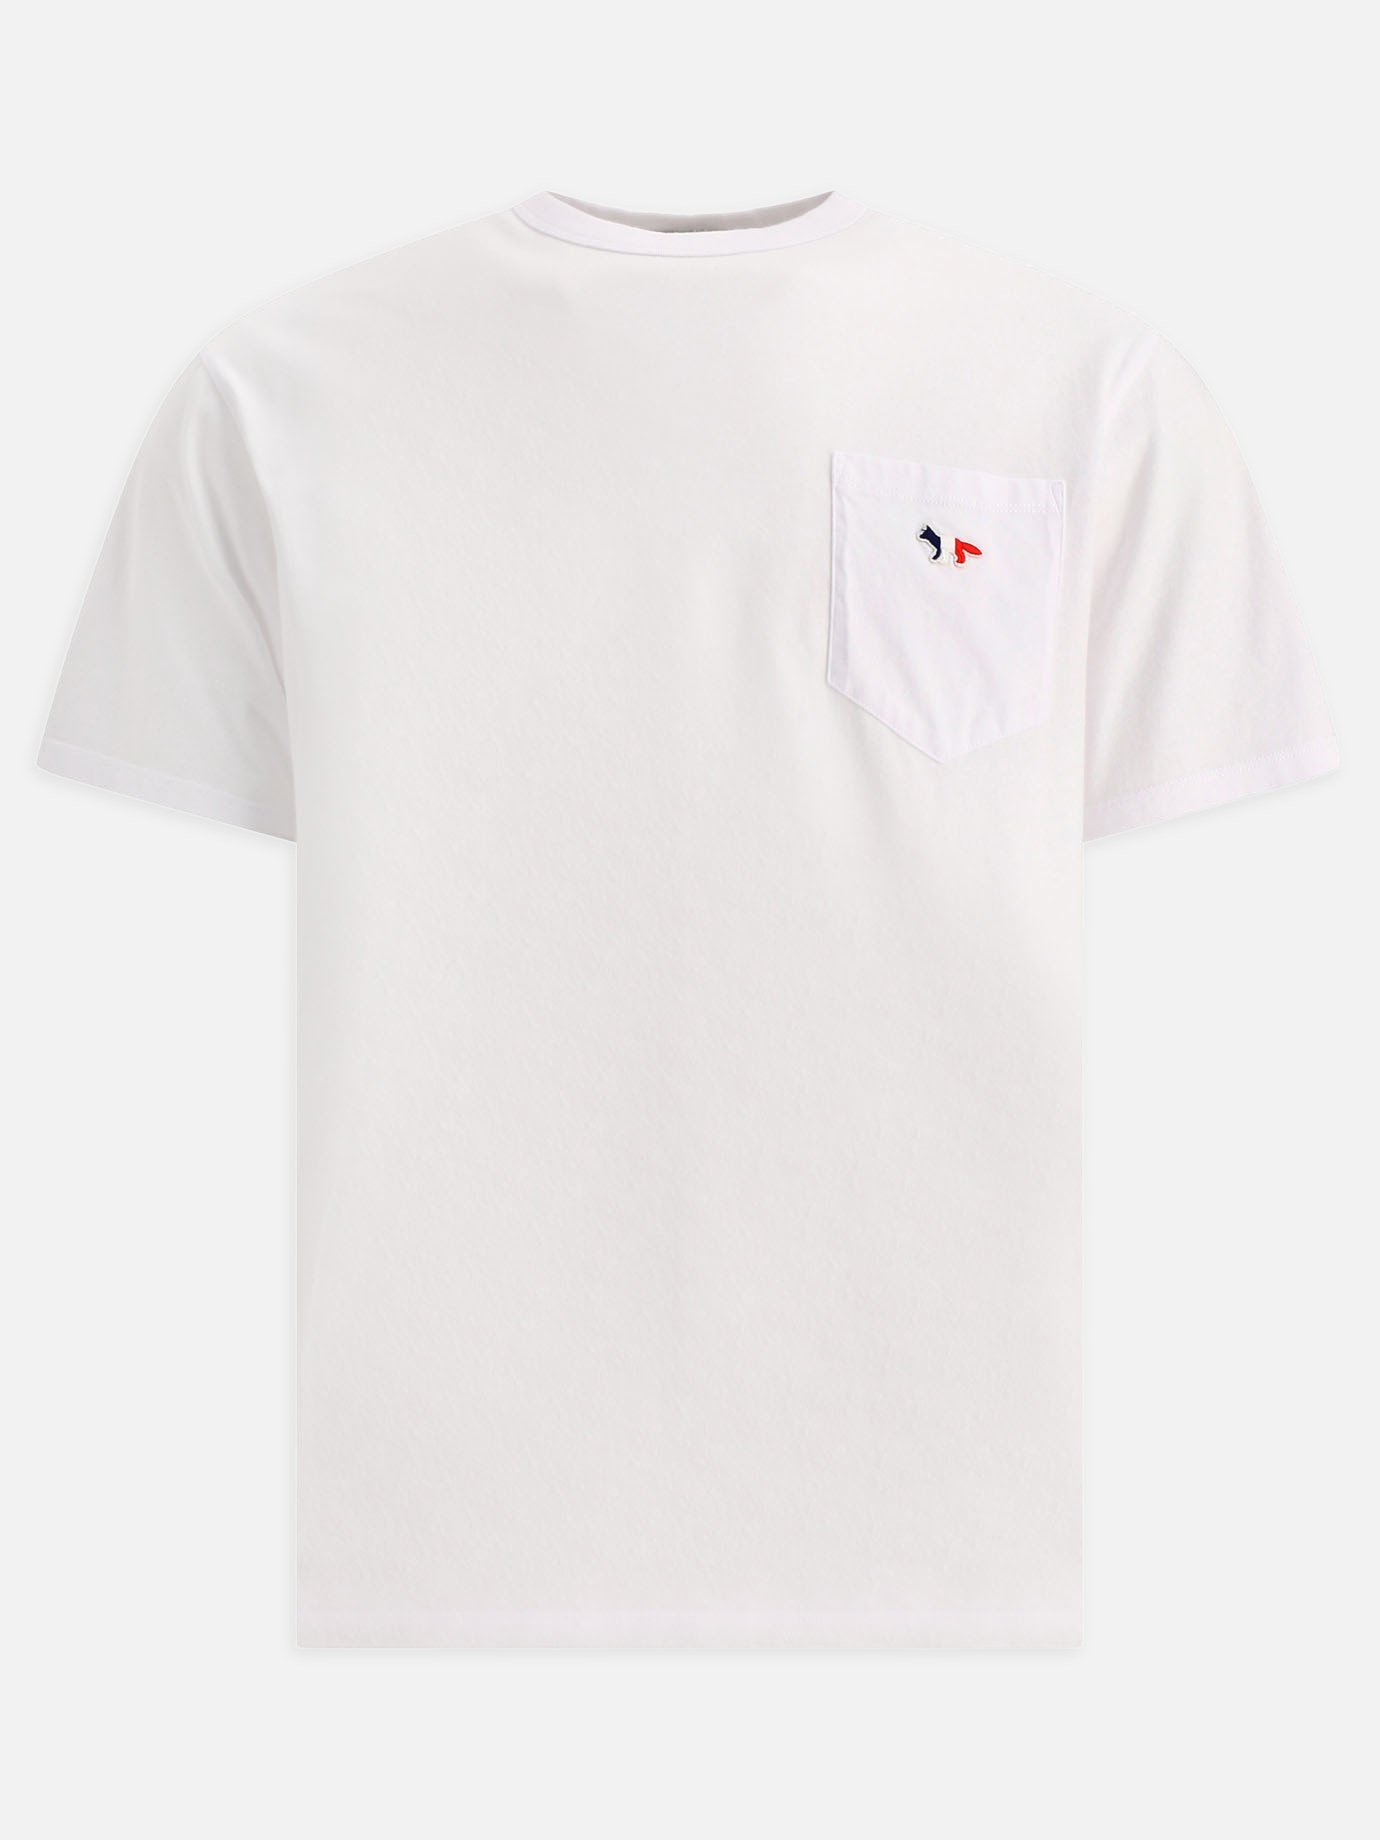 T-shirt  Tricolor Fox by Maison Kitsuné - 1